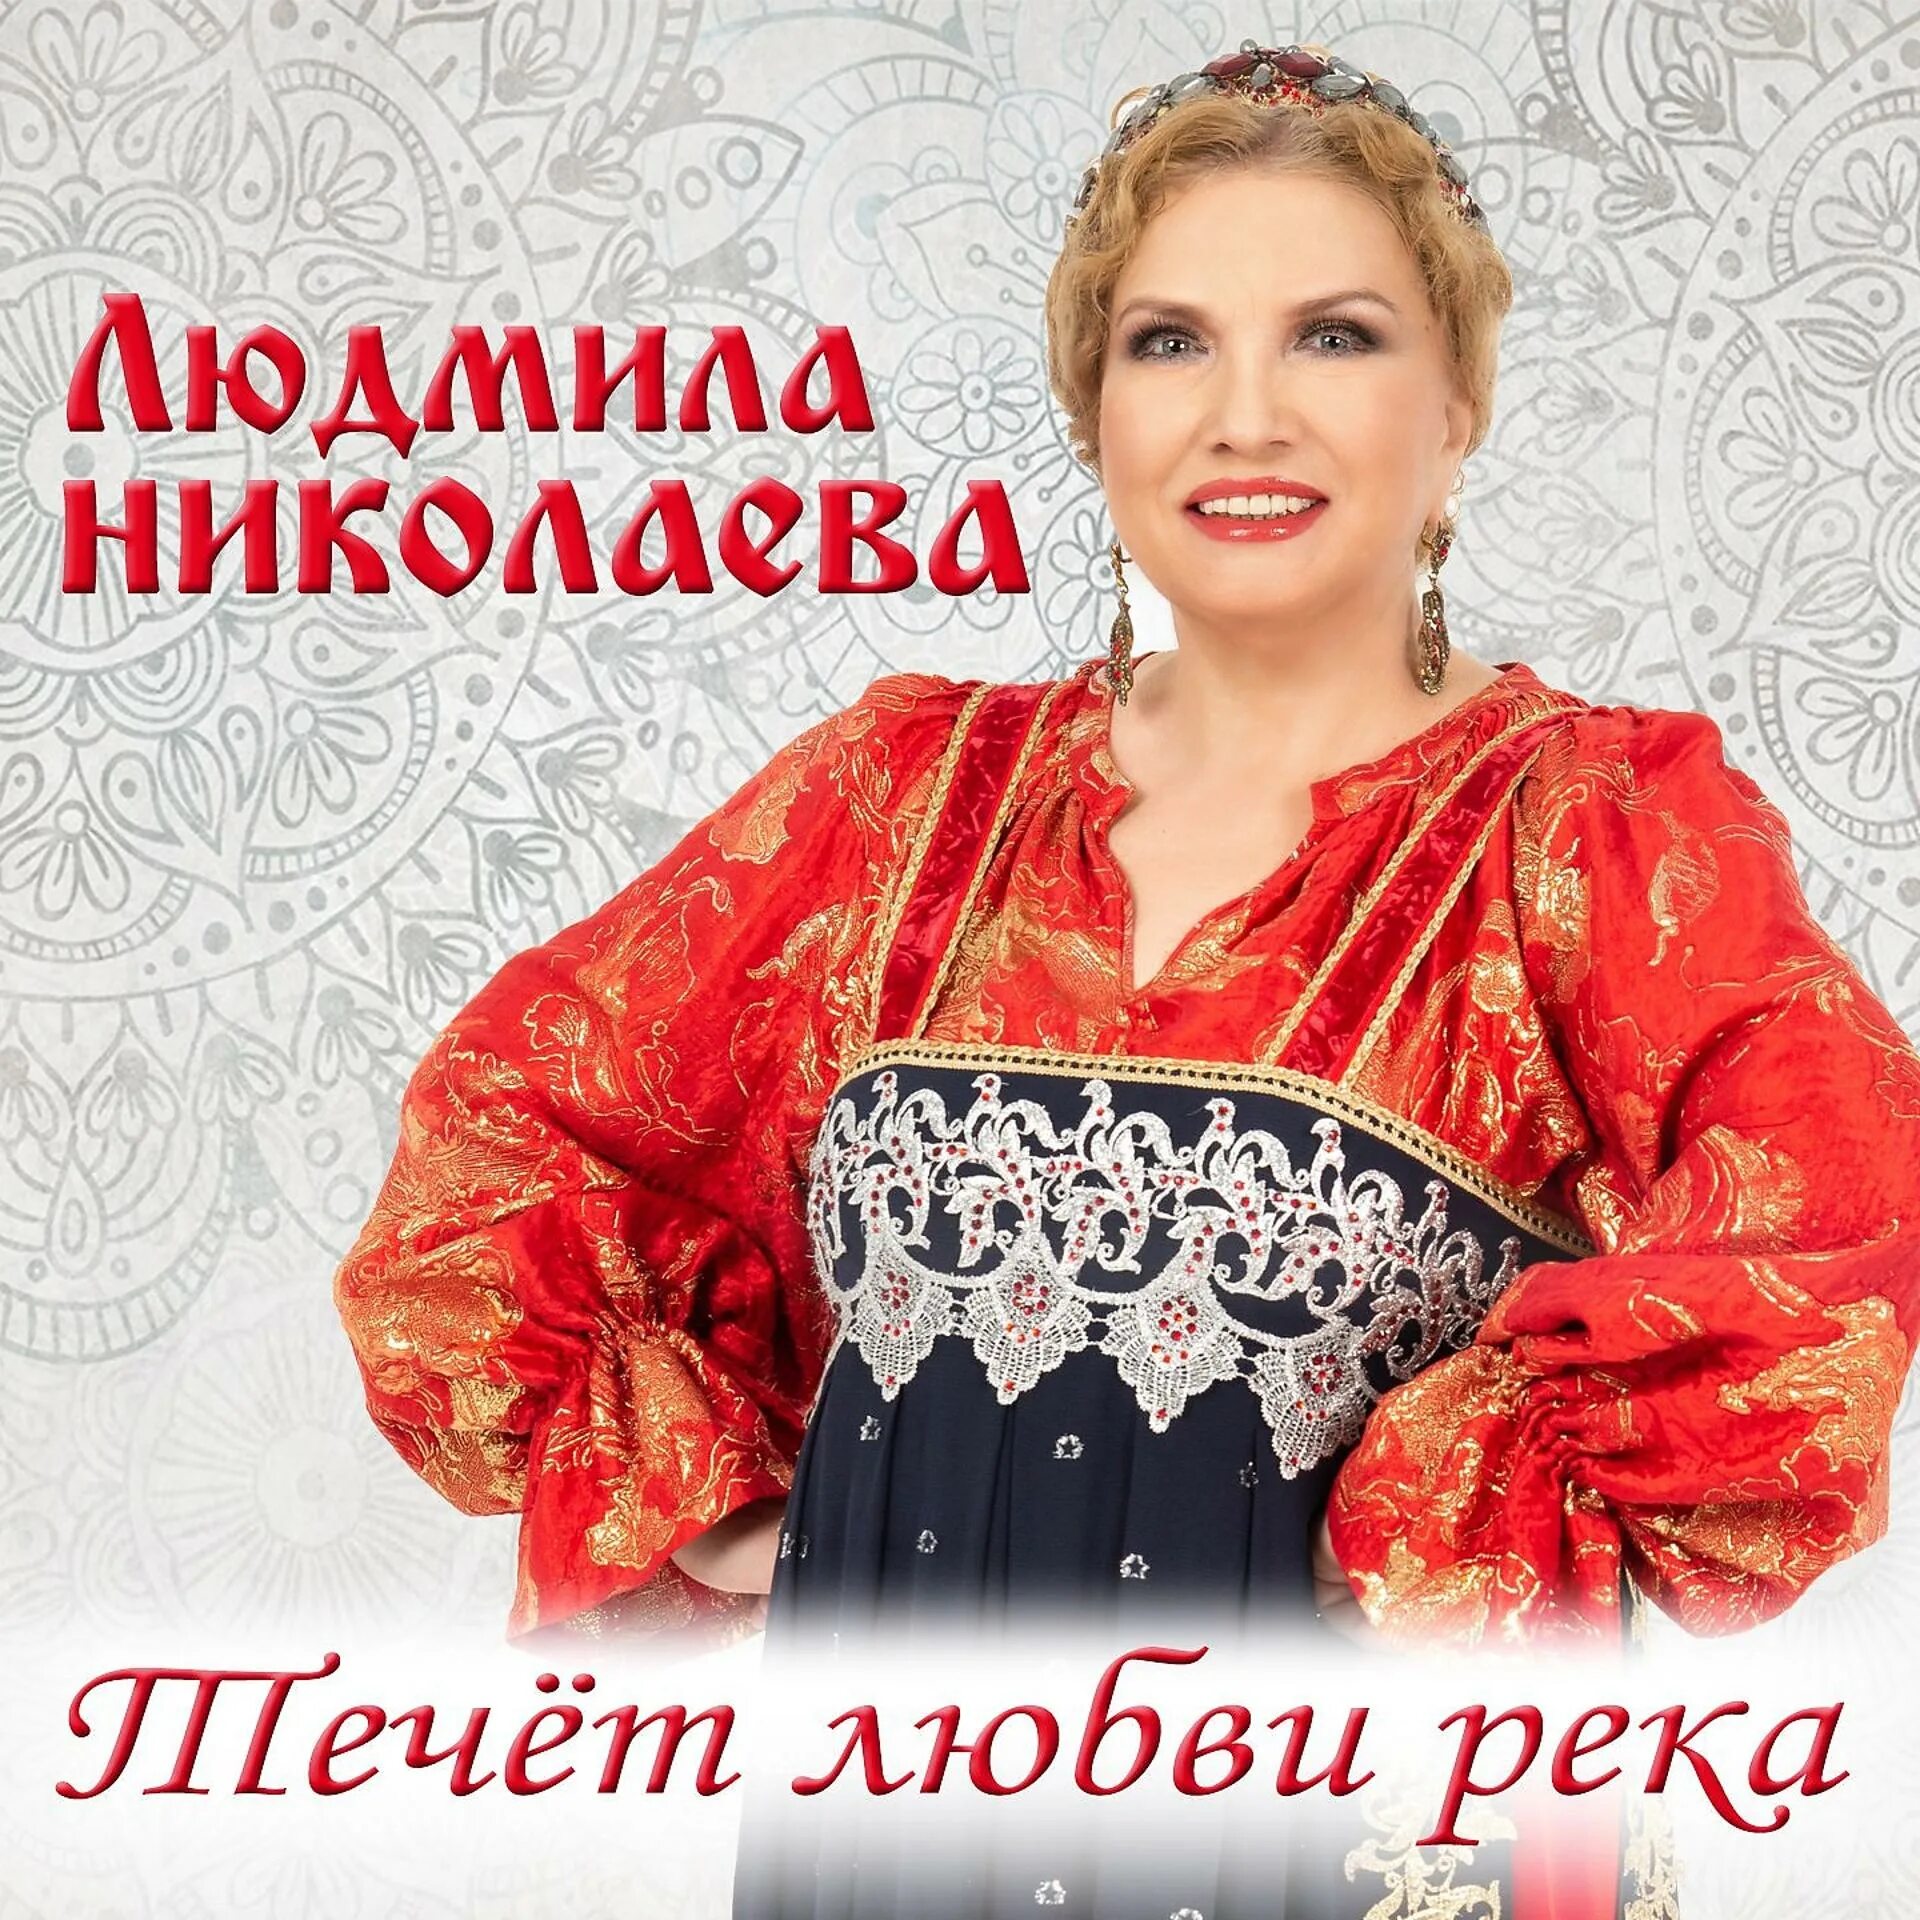 Альбом песен Людмилы Николаевой. Песни людмилы николаевой русская душа